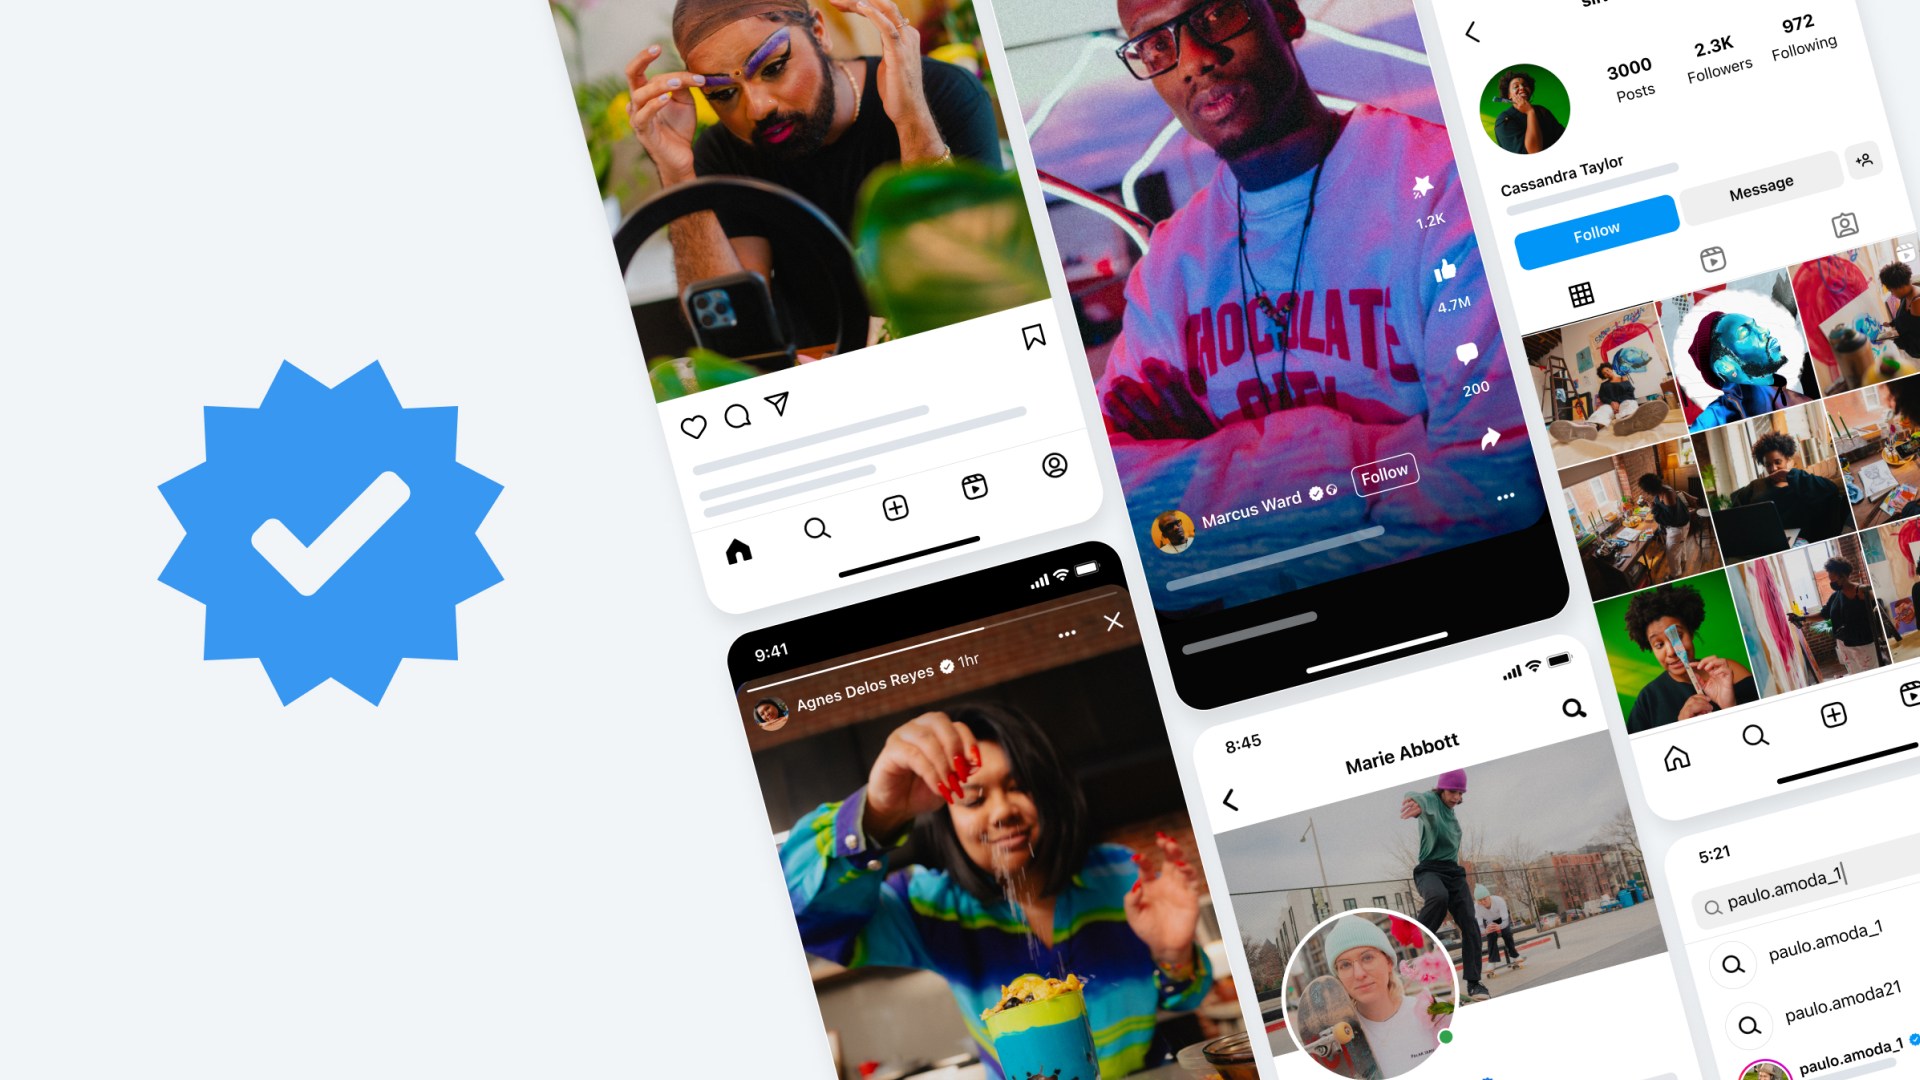 Instagram meraup keuntungan di hari pertama peluncuran centang biru berbayar